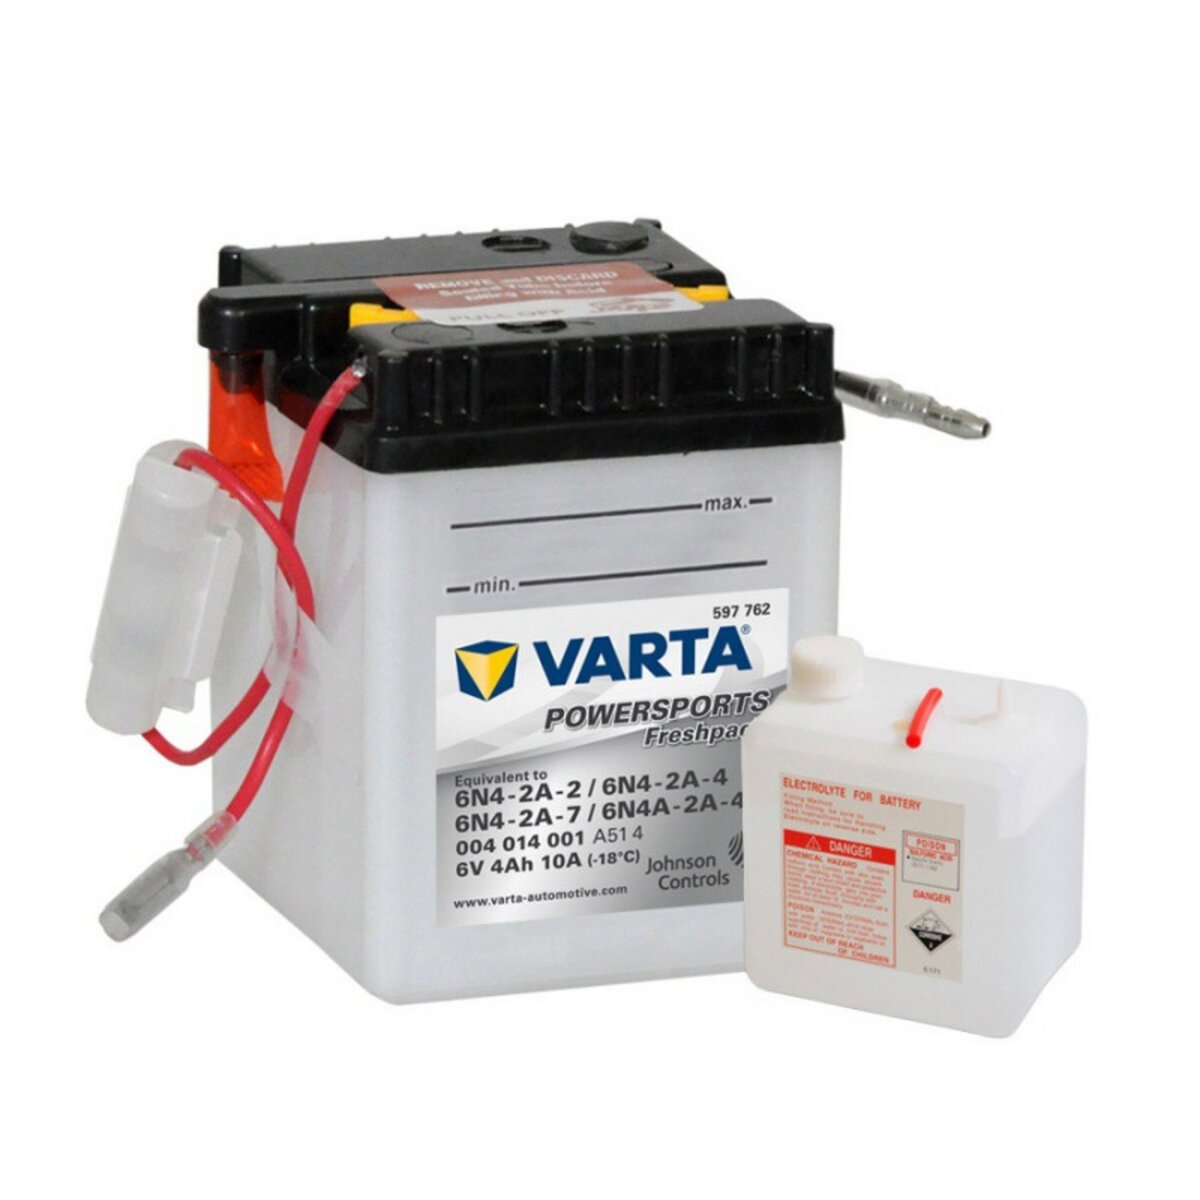 Varta Batterie Moto VARTA 6N4-2A-2, 6N4-2A-4, 6N4A-2A-7 6V 4ah 10A